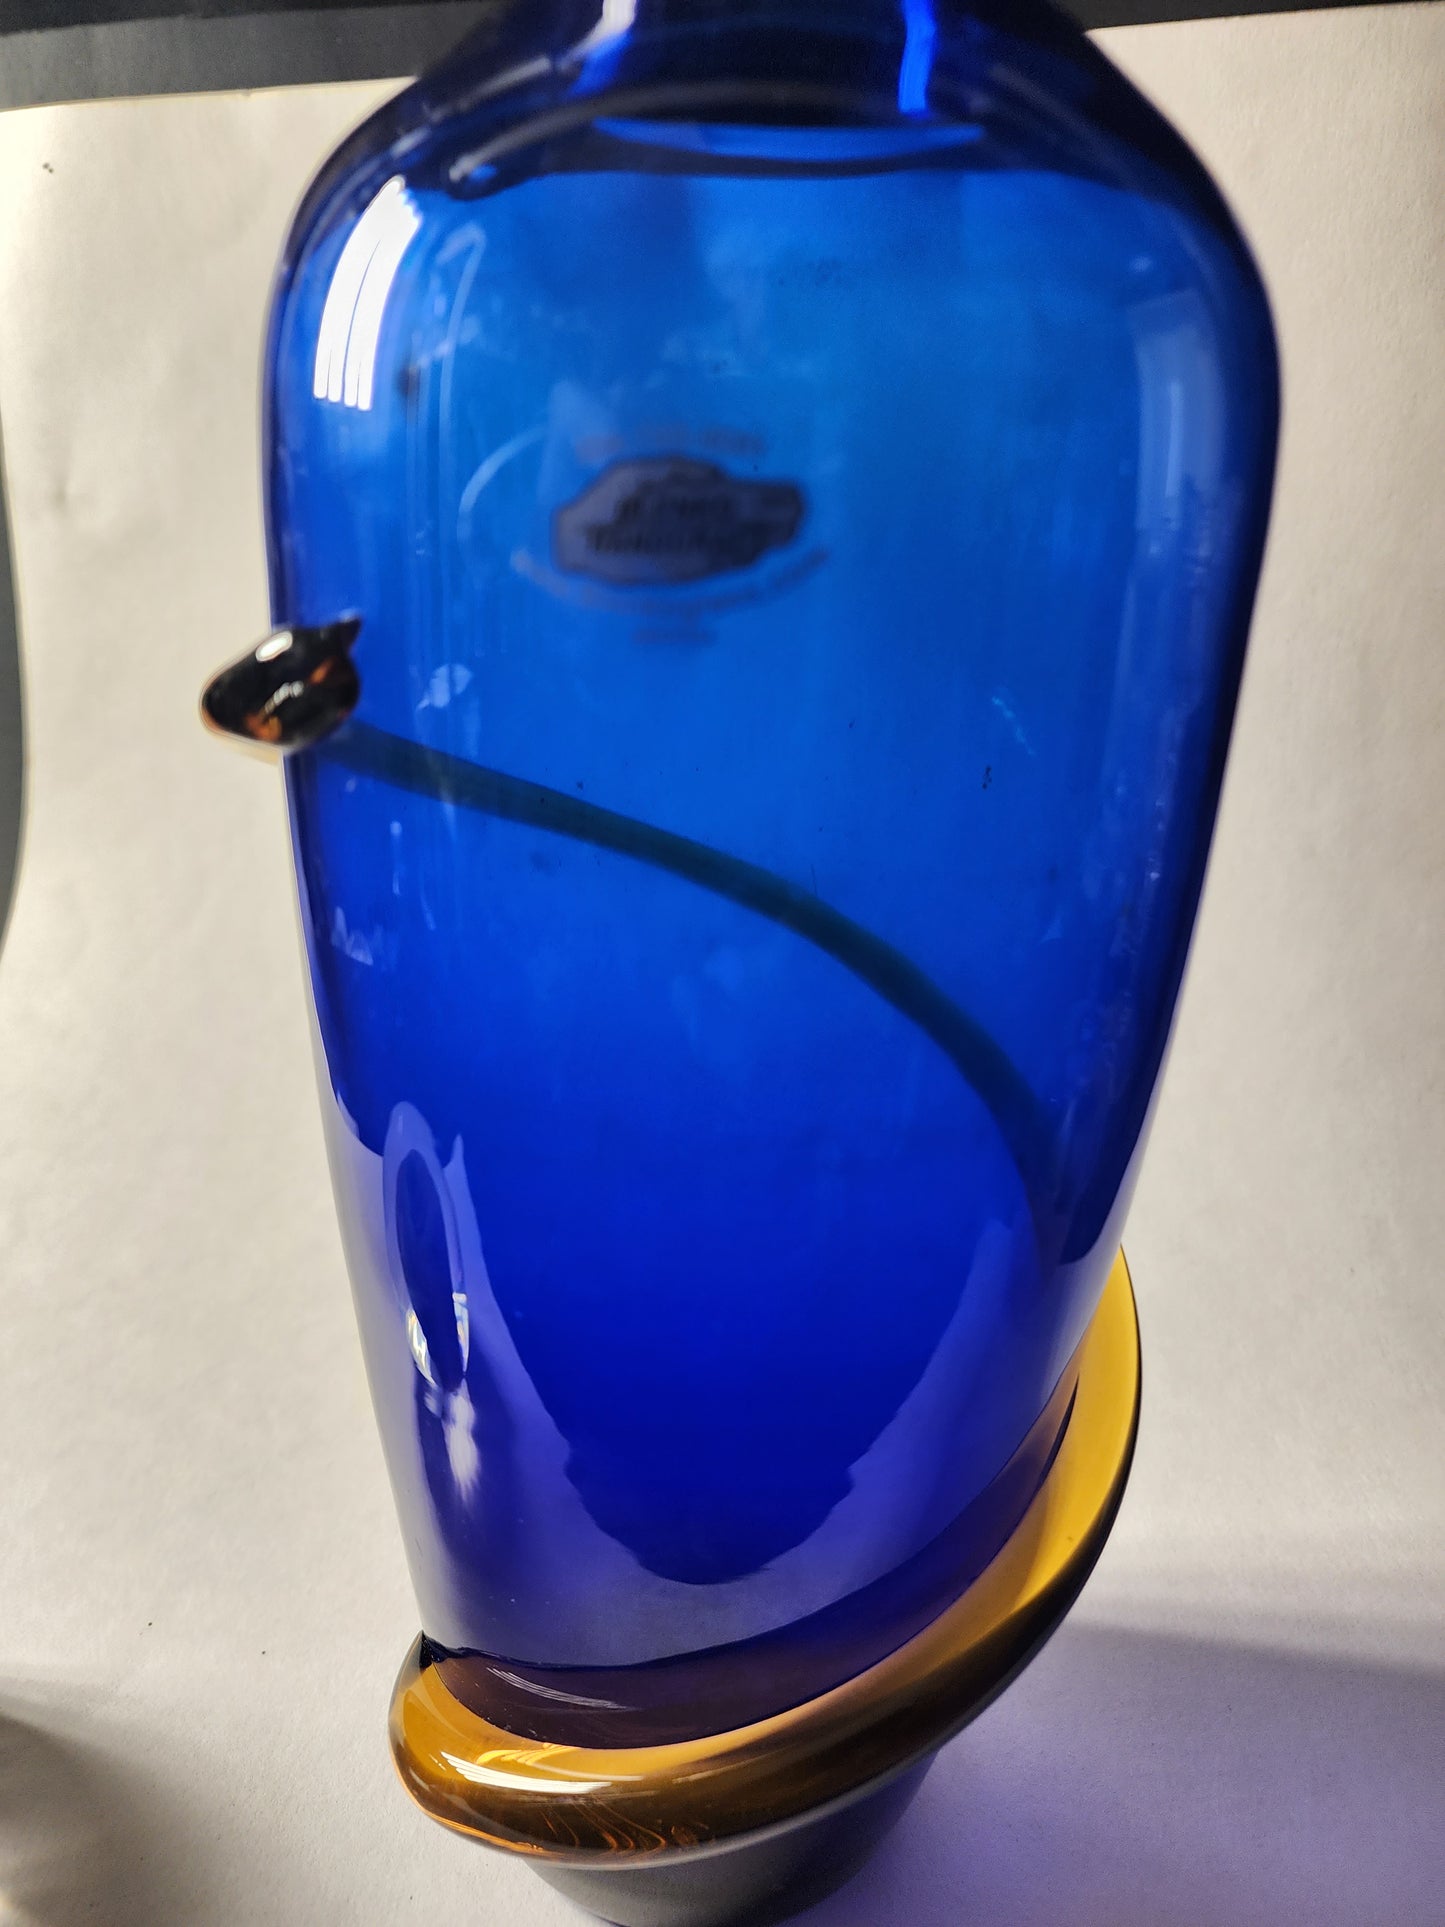 Blenko Glass cobalt blue vase handcraft Richard 2000